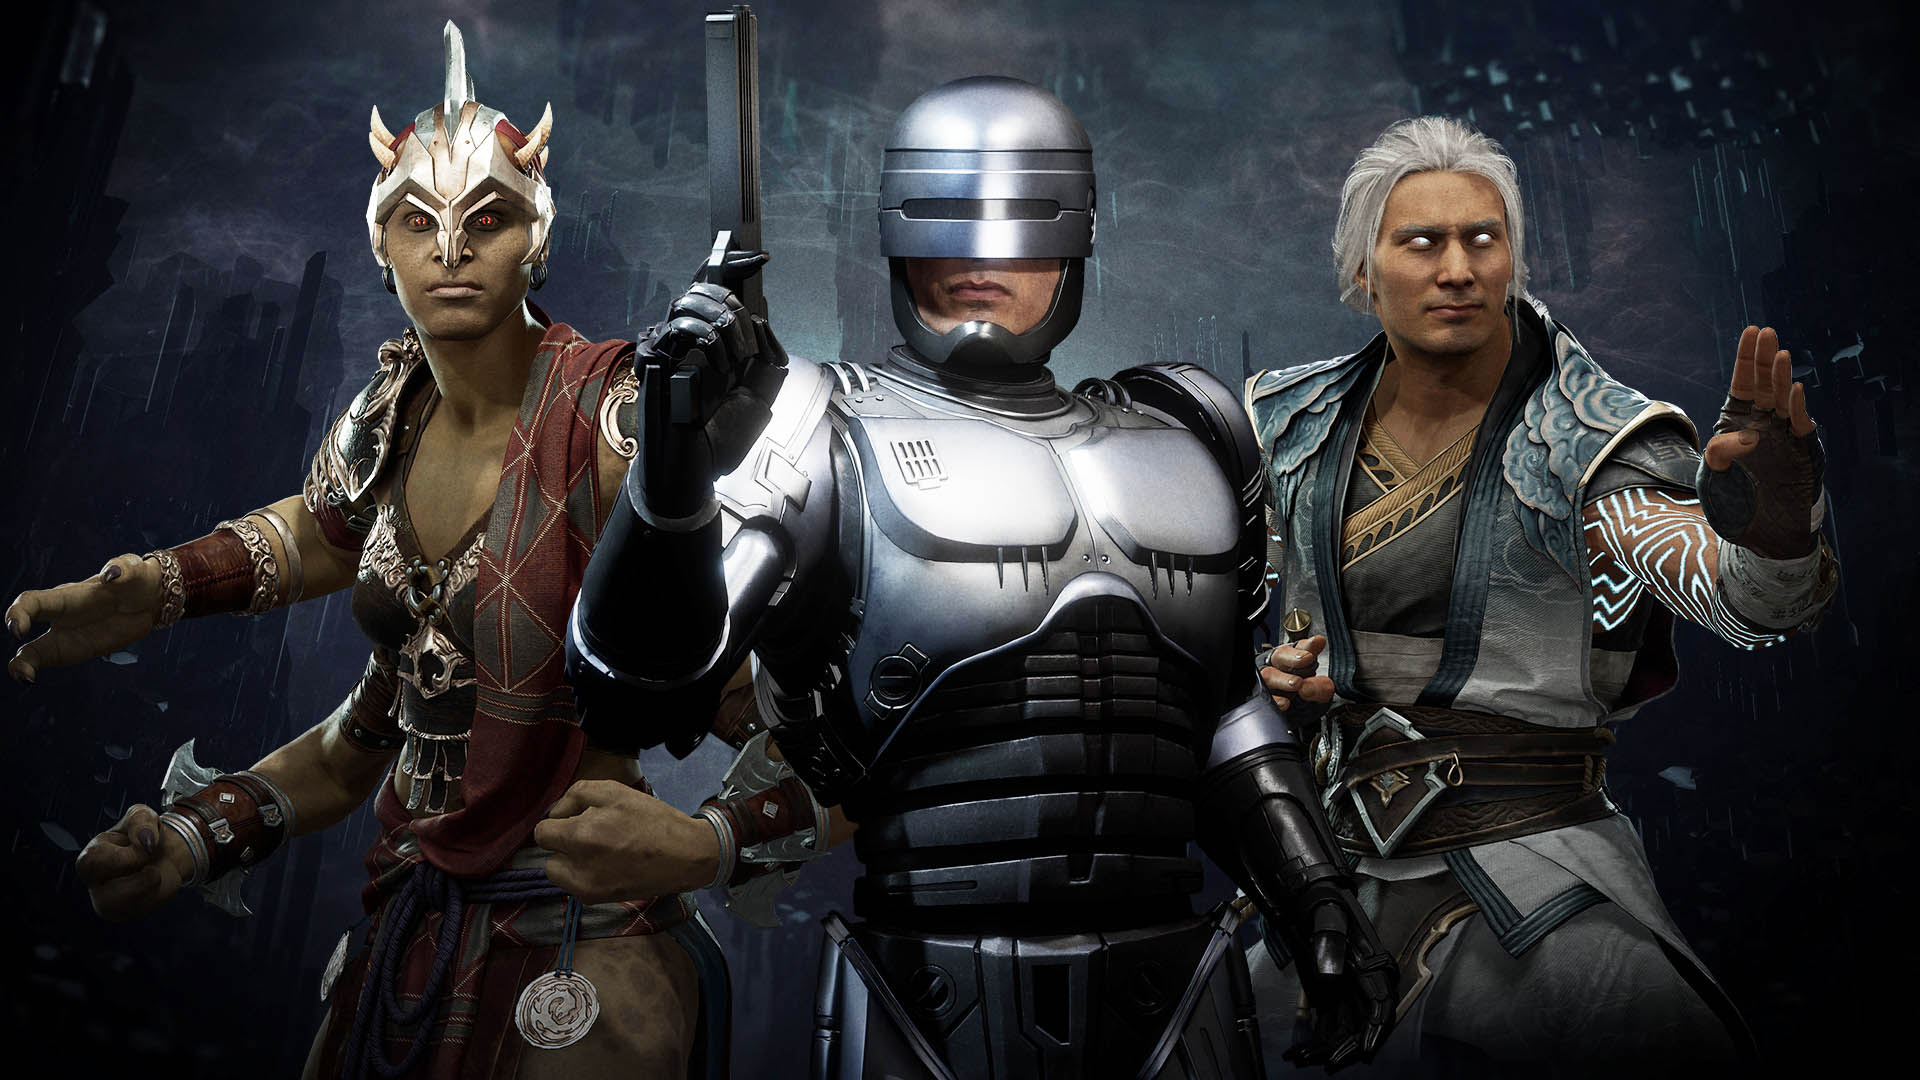 Meet the Voice Actors of Mortal Kombat 11's Voice Cast